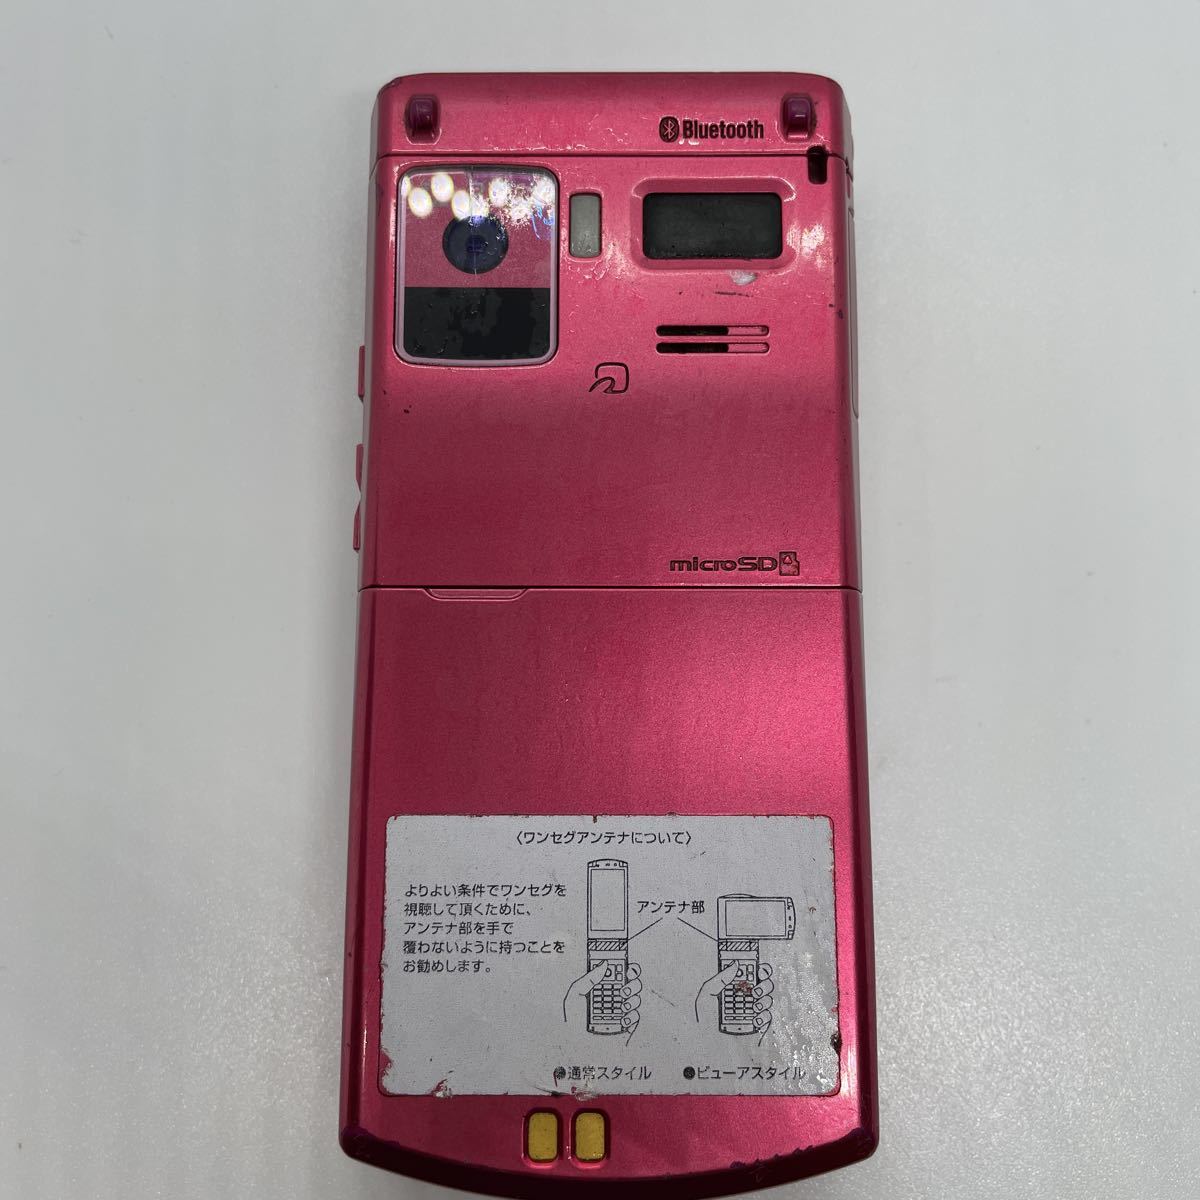  с дефектом NTTdocomo F-07B Bluetooth соответствует модель Precious Rose Precious rose DoCoMo мобильный телефон a14g14sm